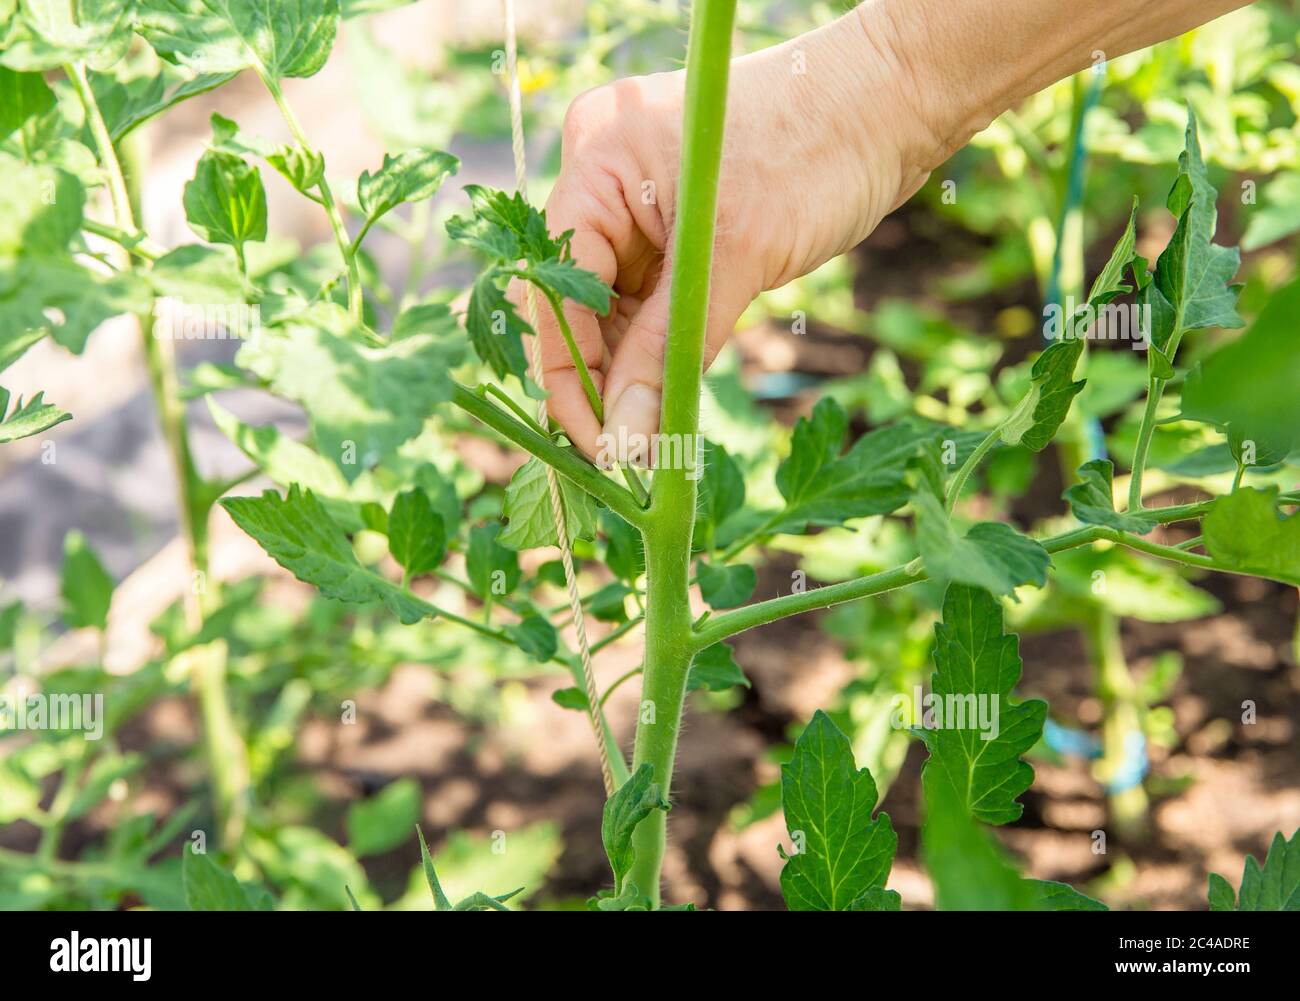 Gros plan de la main de la femme pincée hors de l'excès de pousse sucer qui poussent sur la tige de plante de tomate en serre. Banque D'Images